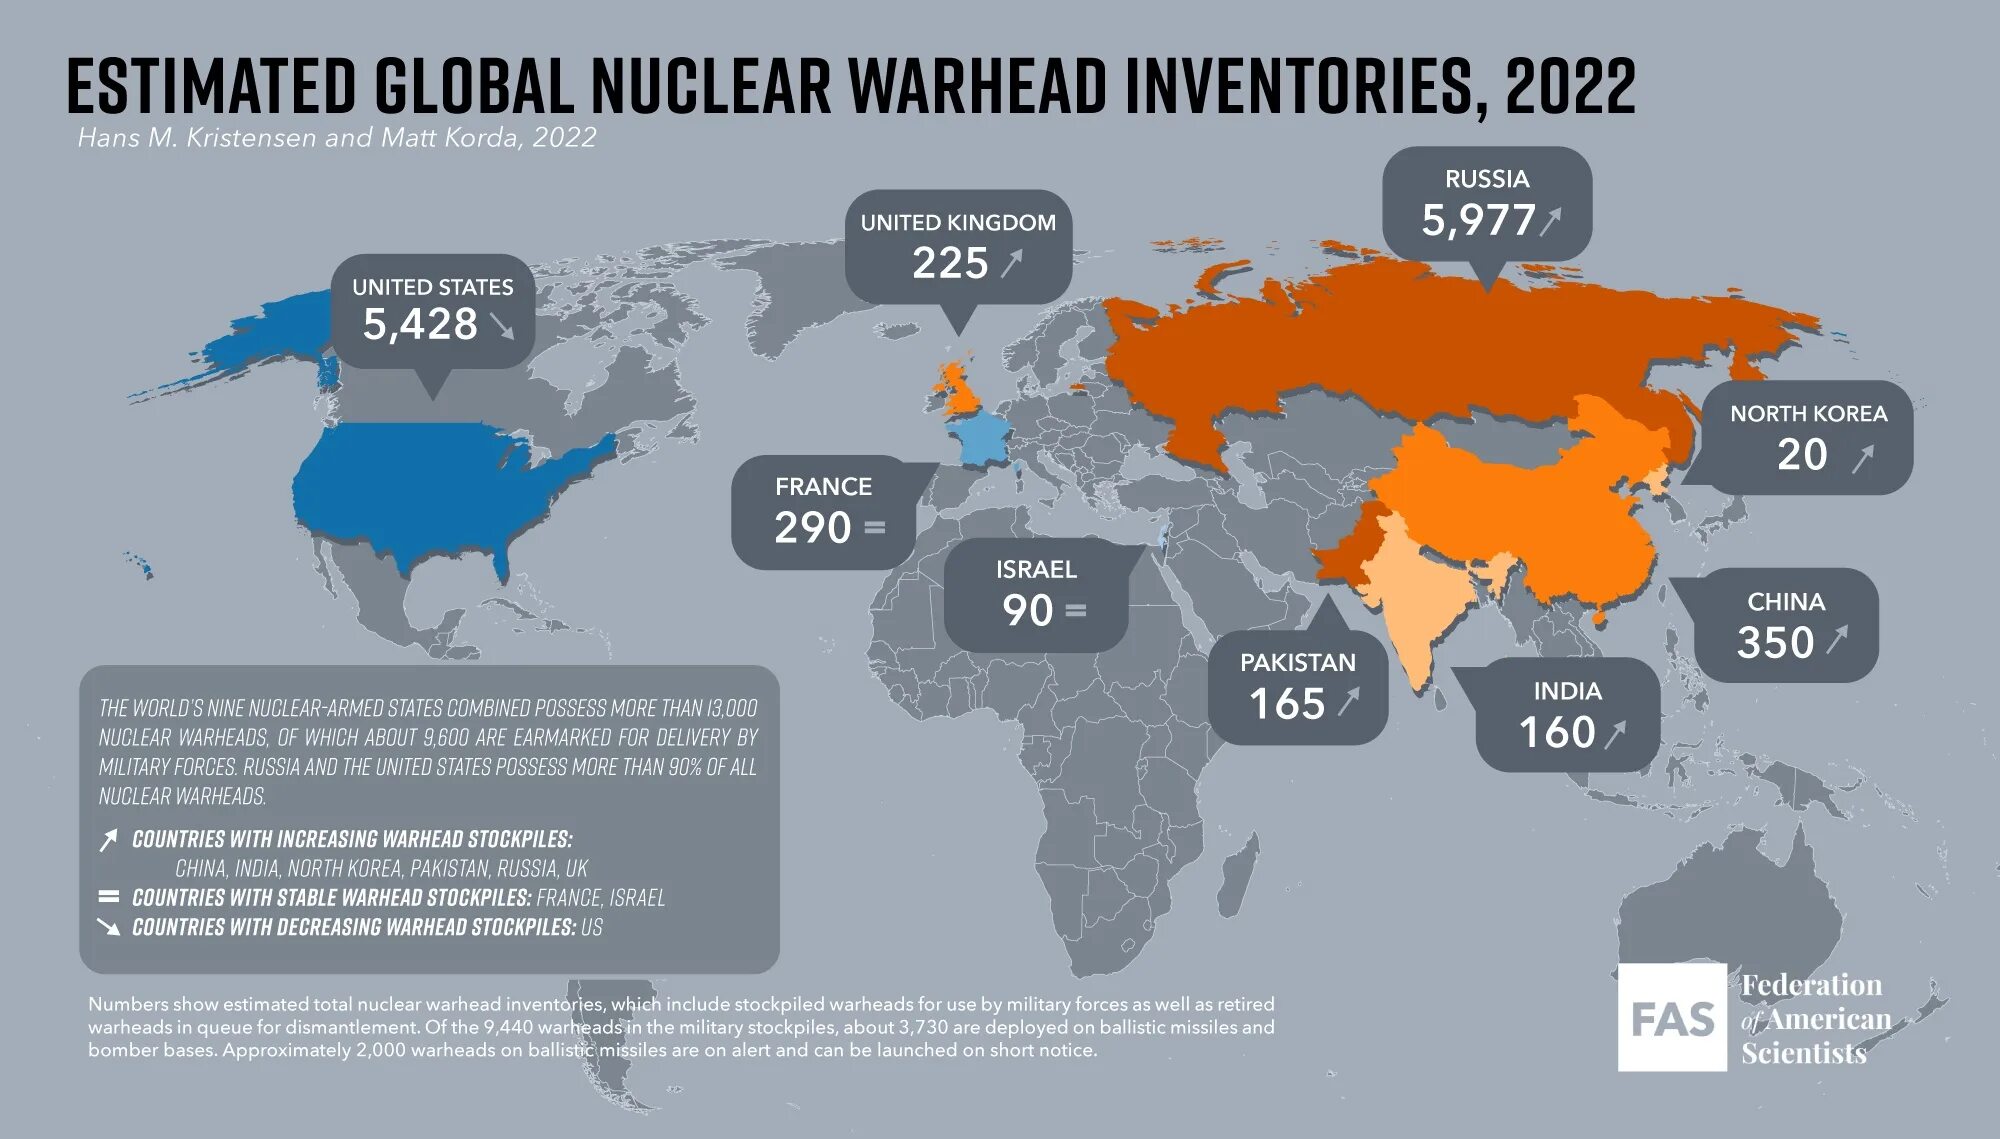 Страны с чдерным лоудием. Cnhfys c zlthysv JH. Количество ядерных боезарядов по странам. Страны обладающие ядерным оружием. Международные ядерные события